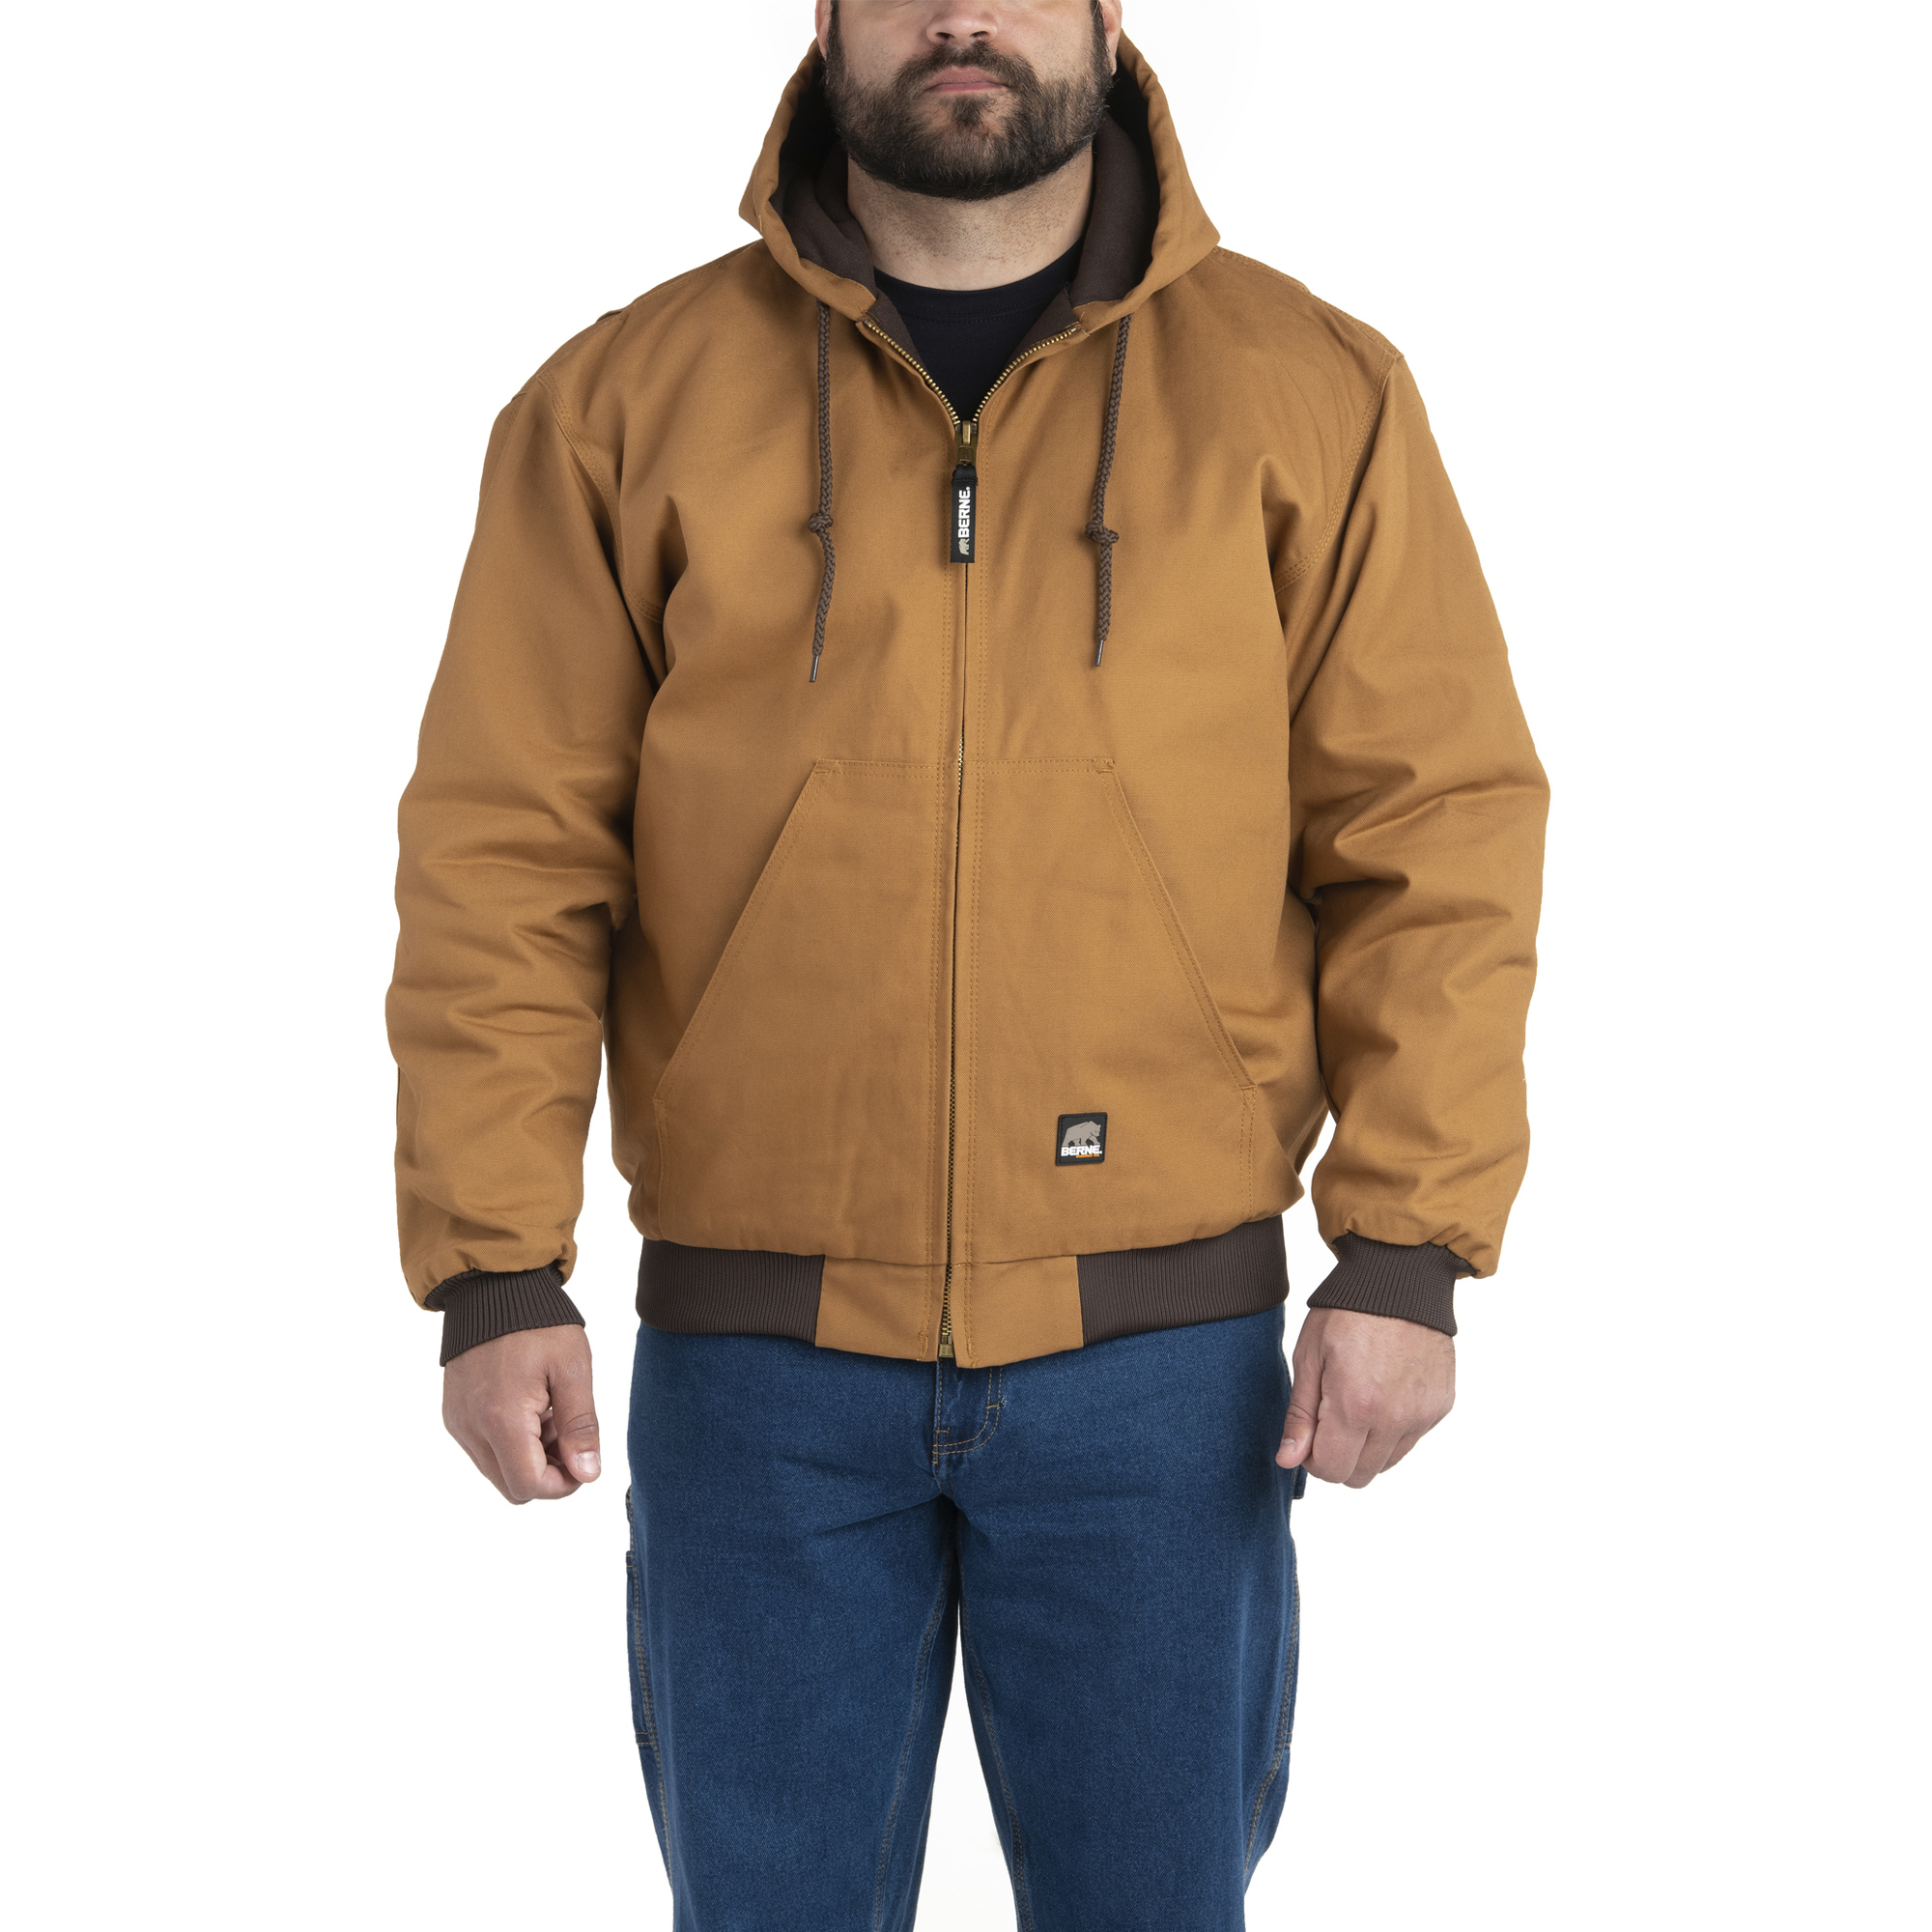 Berne Apparel, Heritage Hooded Jacket, Size XL, Color Brown Duck, Model HJ51